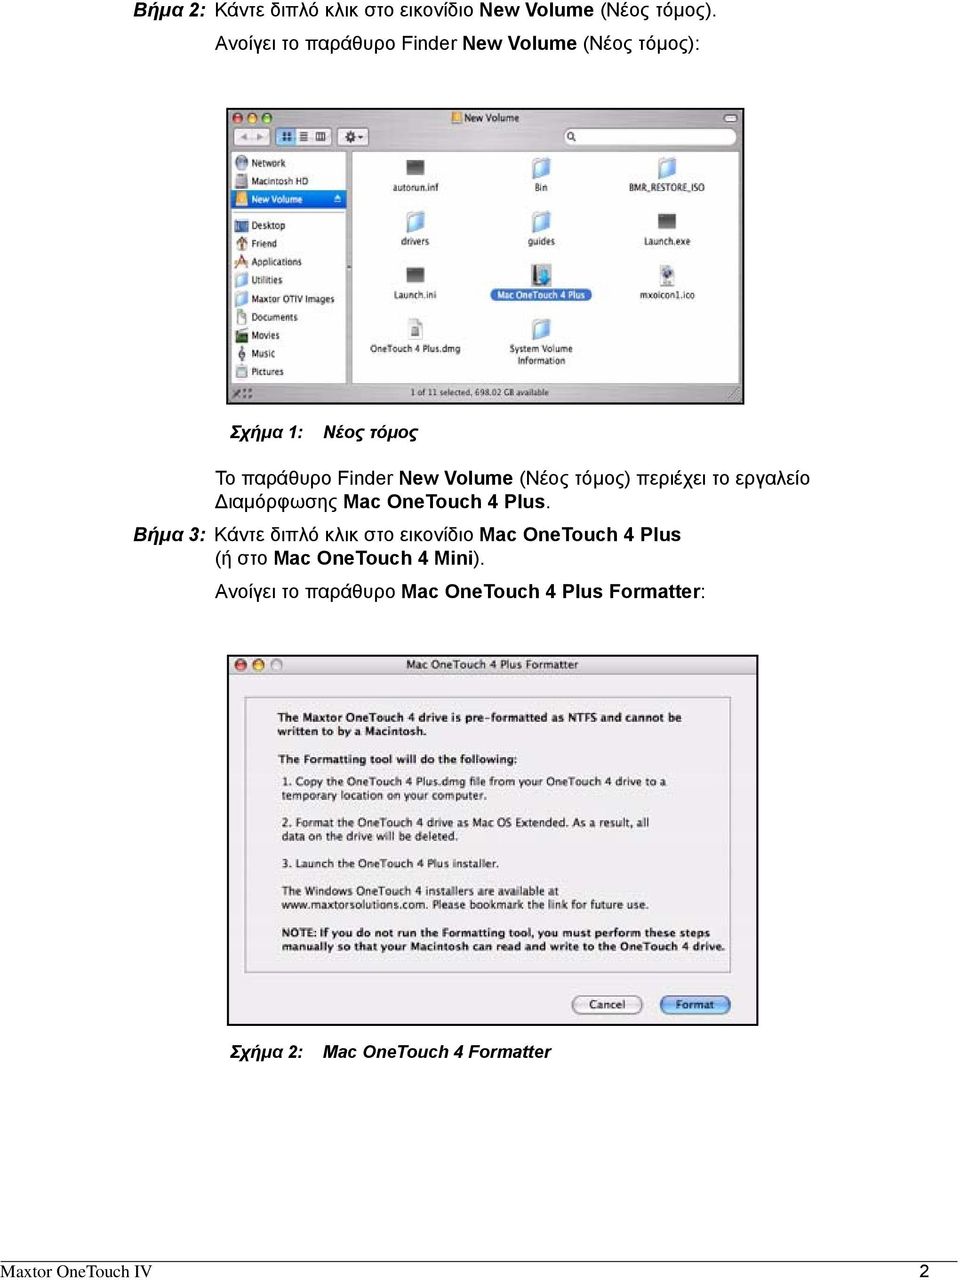 (Νέος τόμος) περιέχει το εργαλείο Διαμόρφωσης Mac OneTouch 4 Plus.